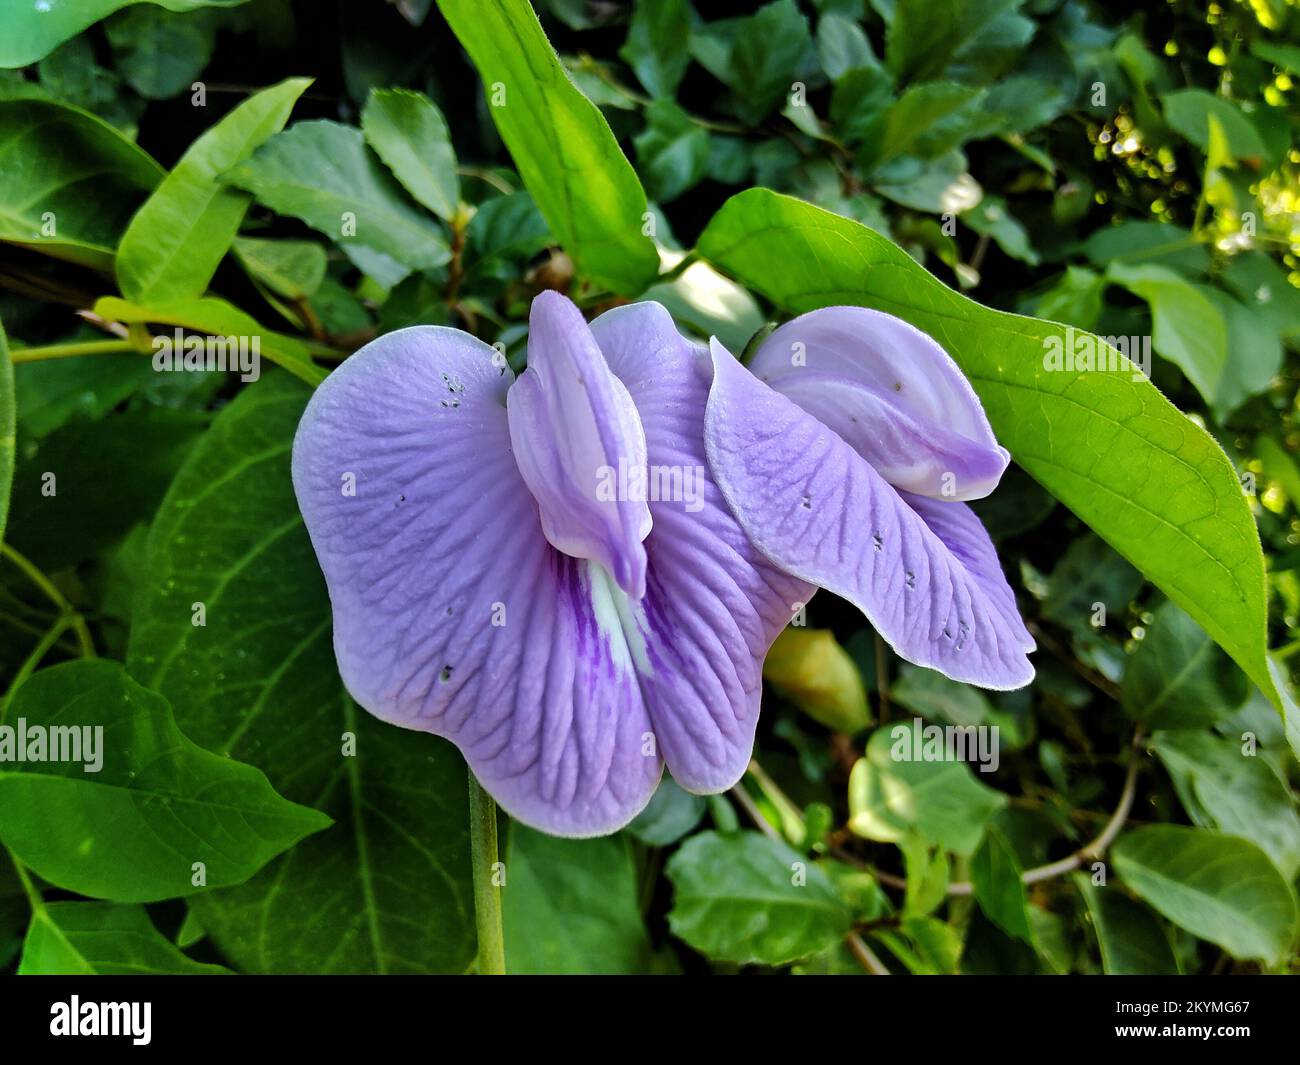 purple flower of butterfly pea Stock Photo